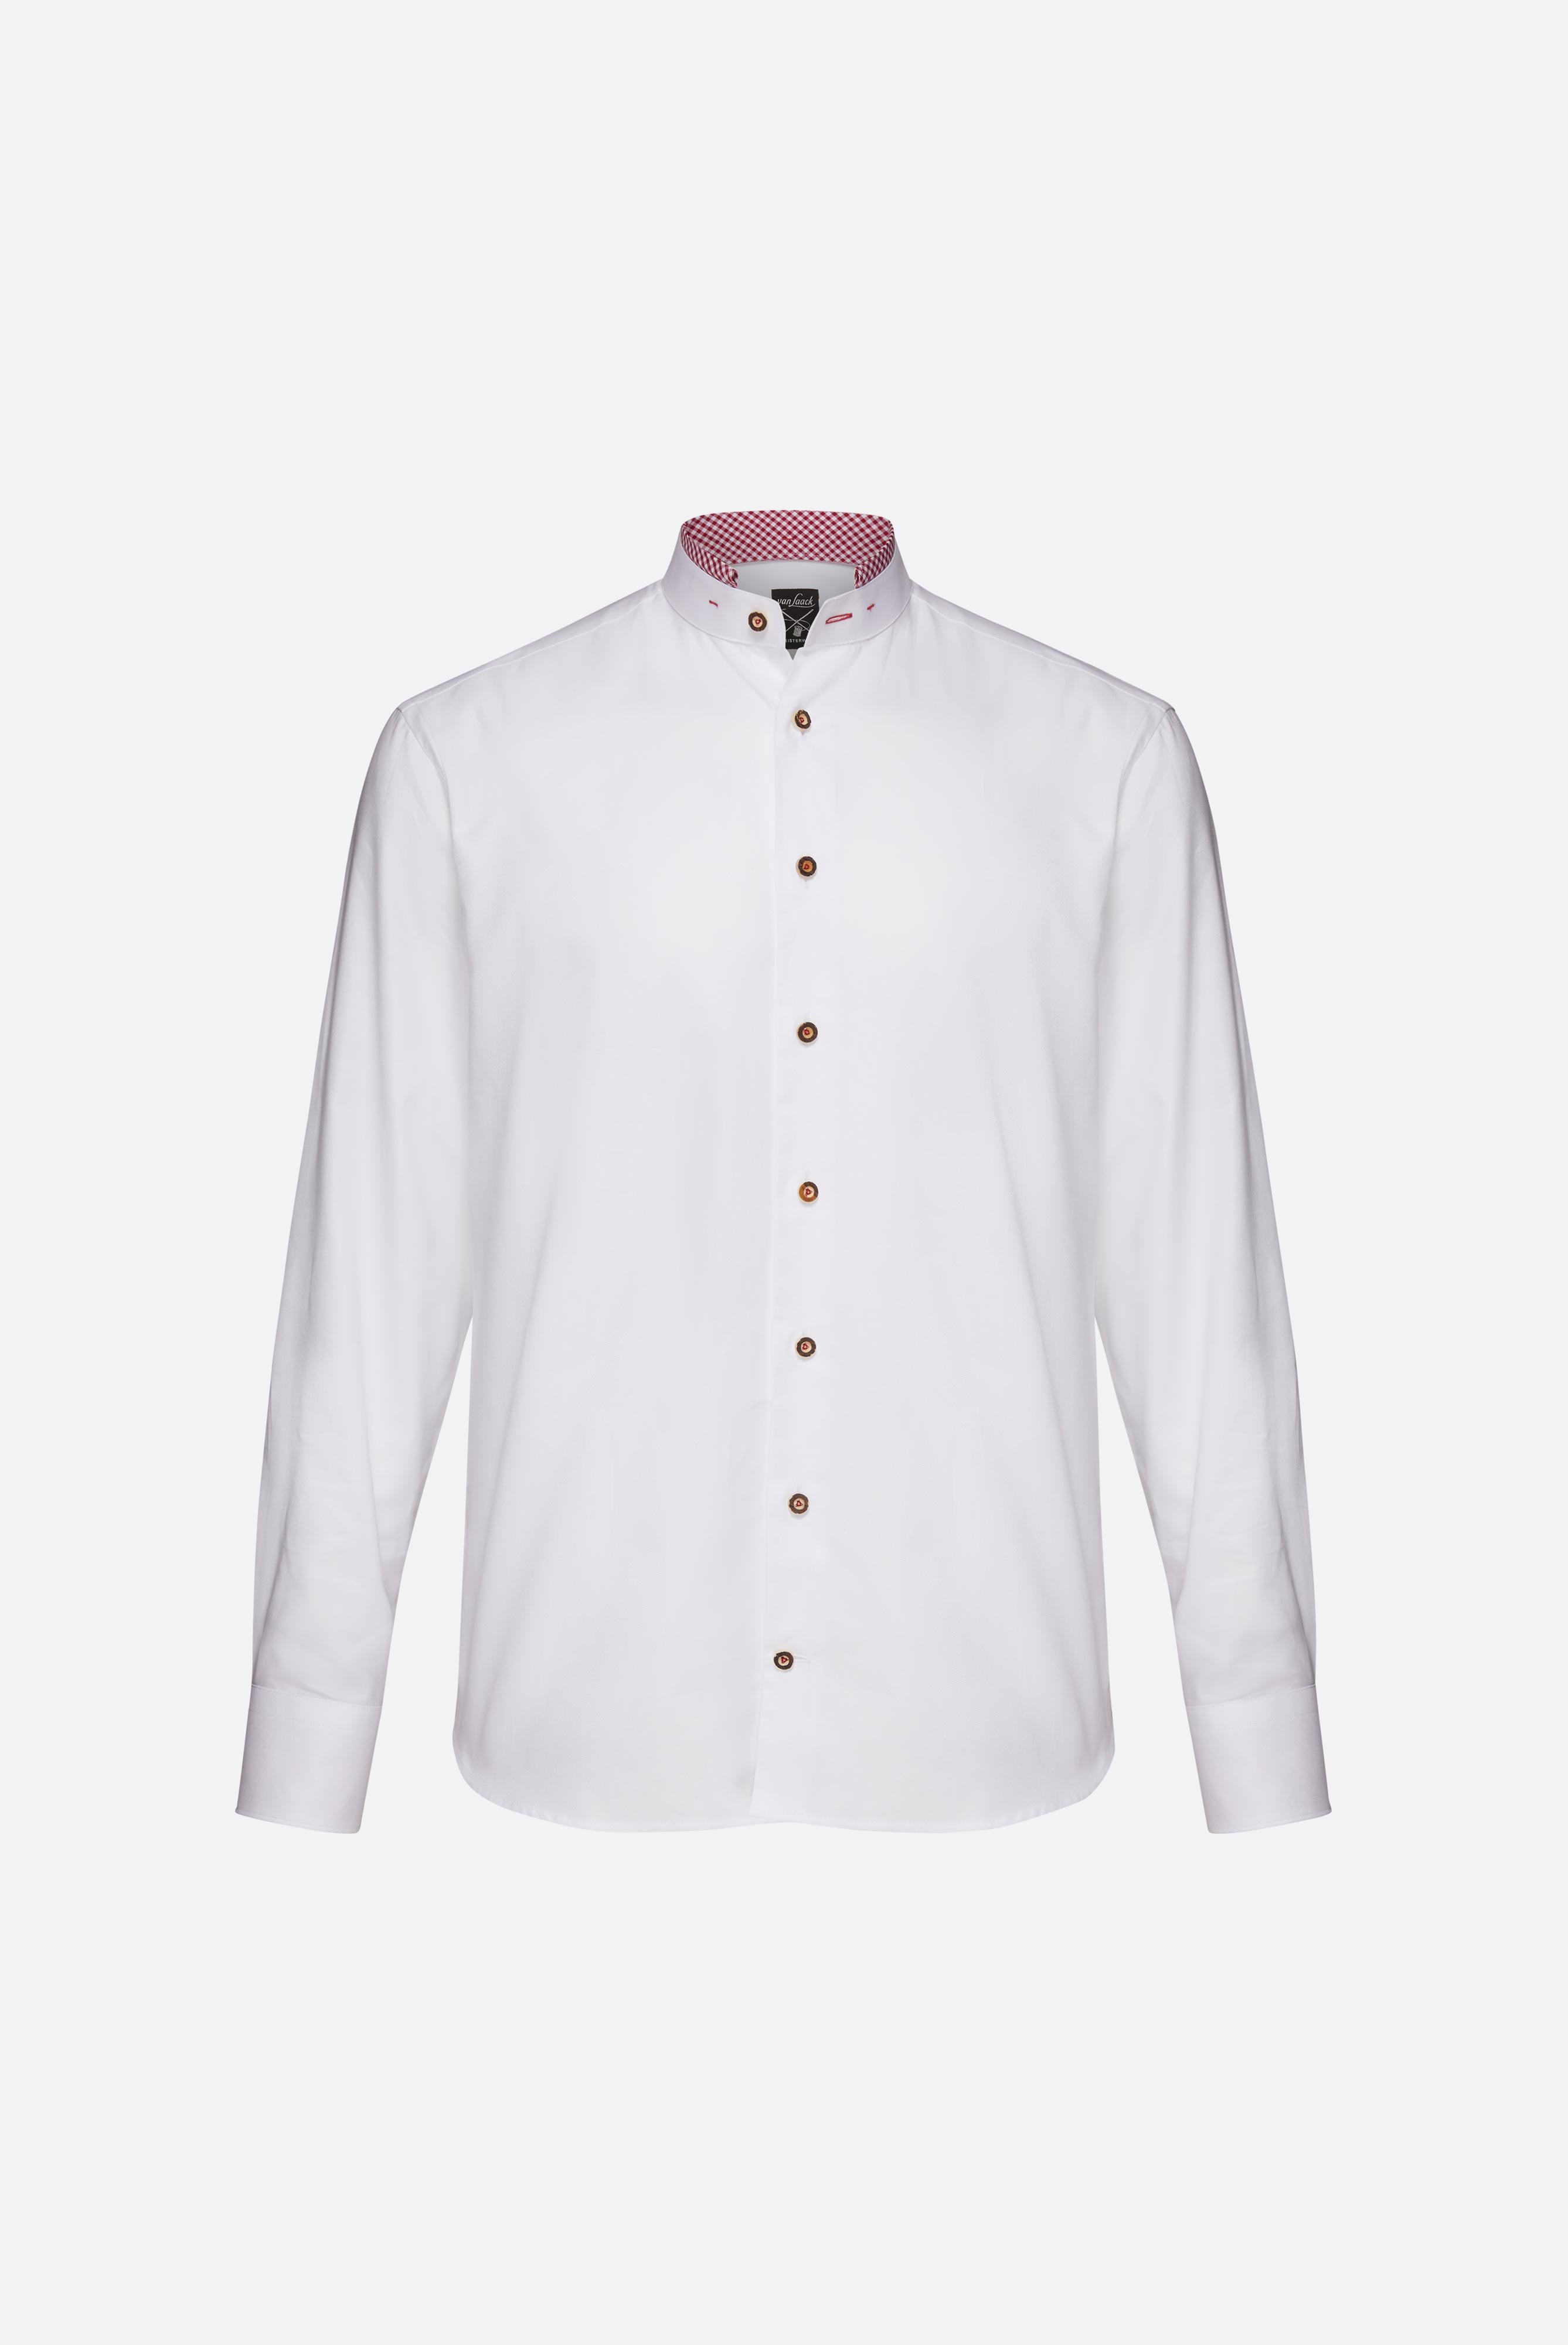 Festliche Hemden+Oxford Trachtenhemd mit Farbdetail Tailor Fit+20.2081.8Q.150251.005.38